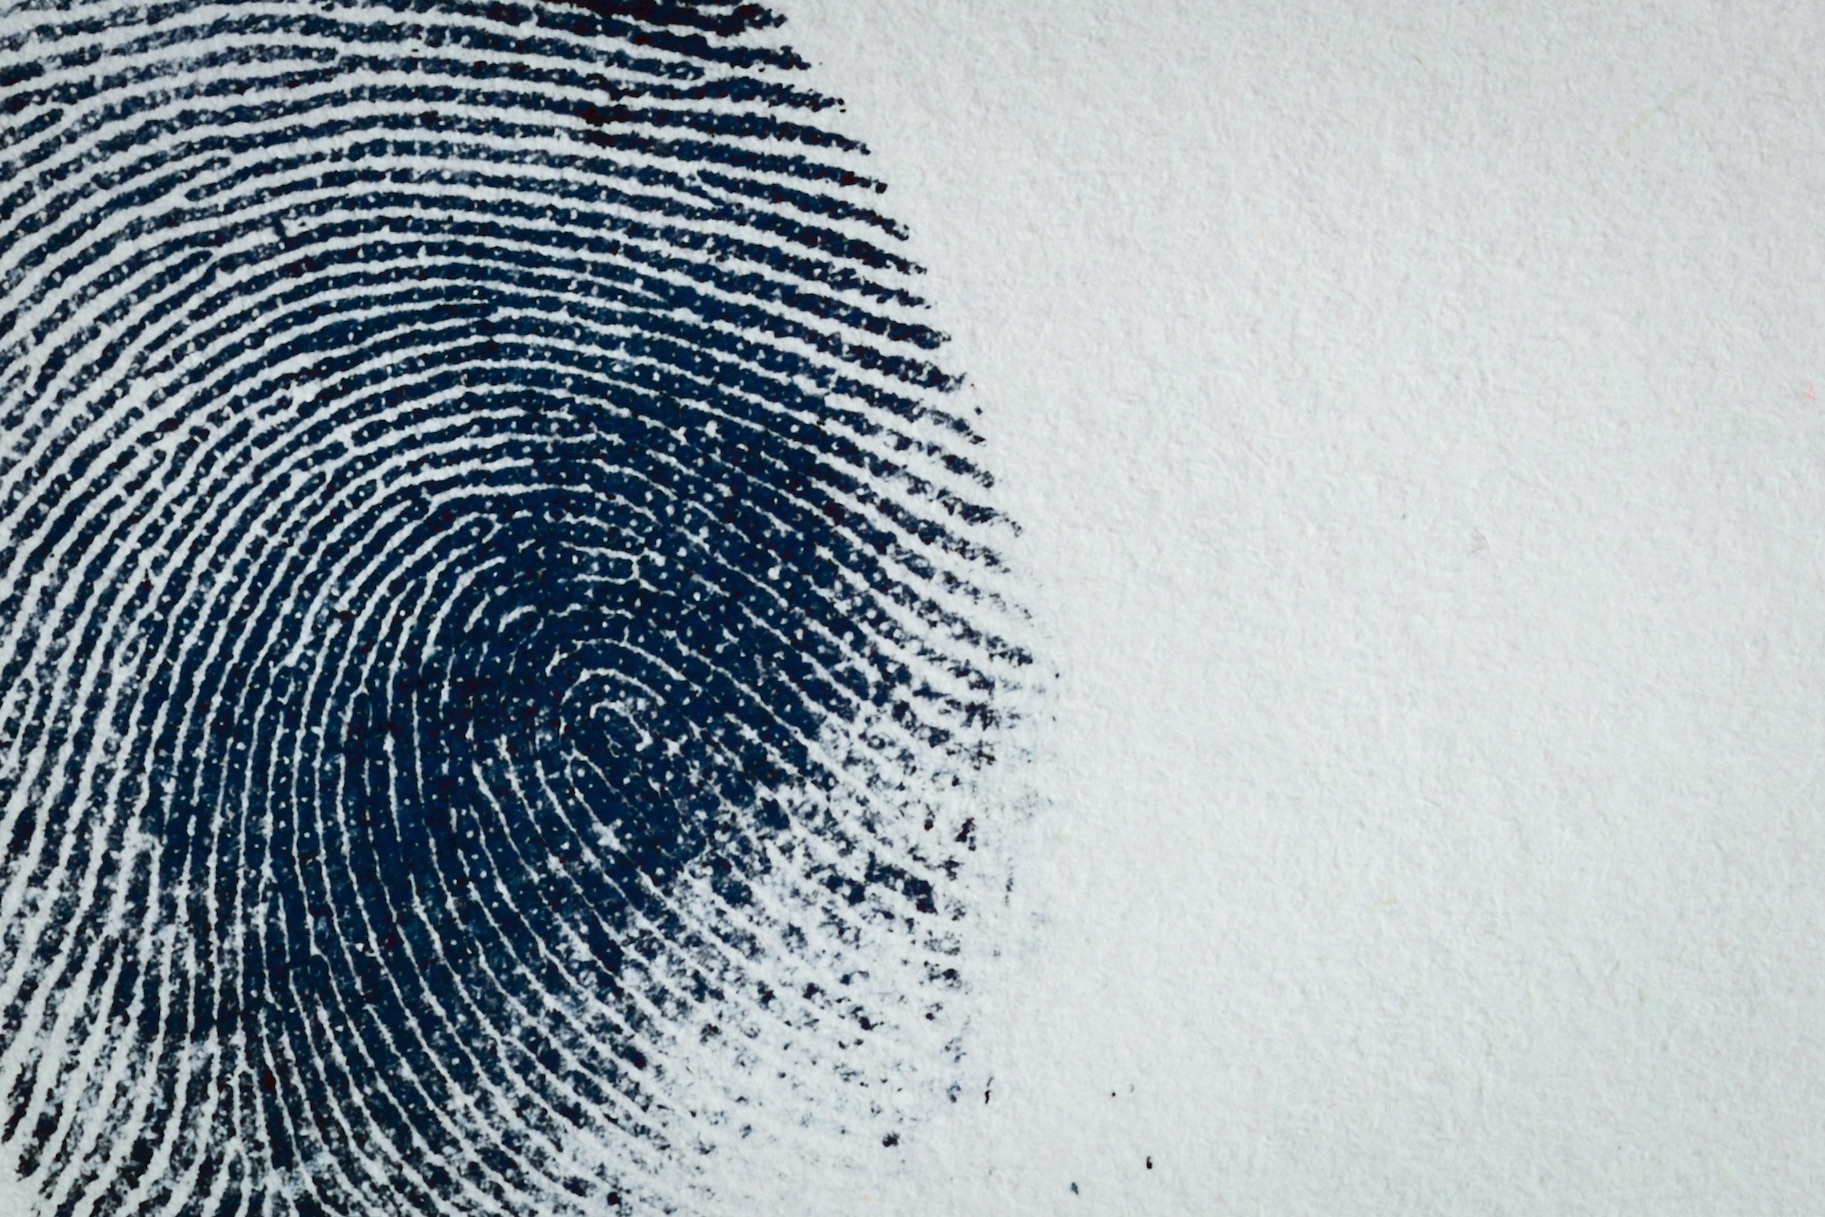 fingerprint-on-paper-g